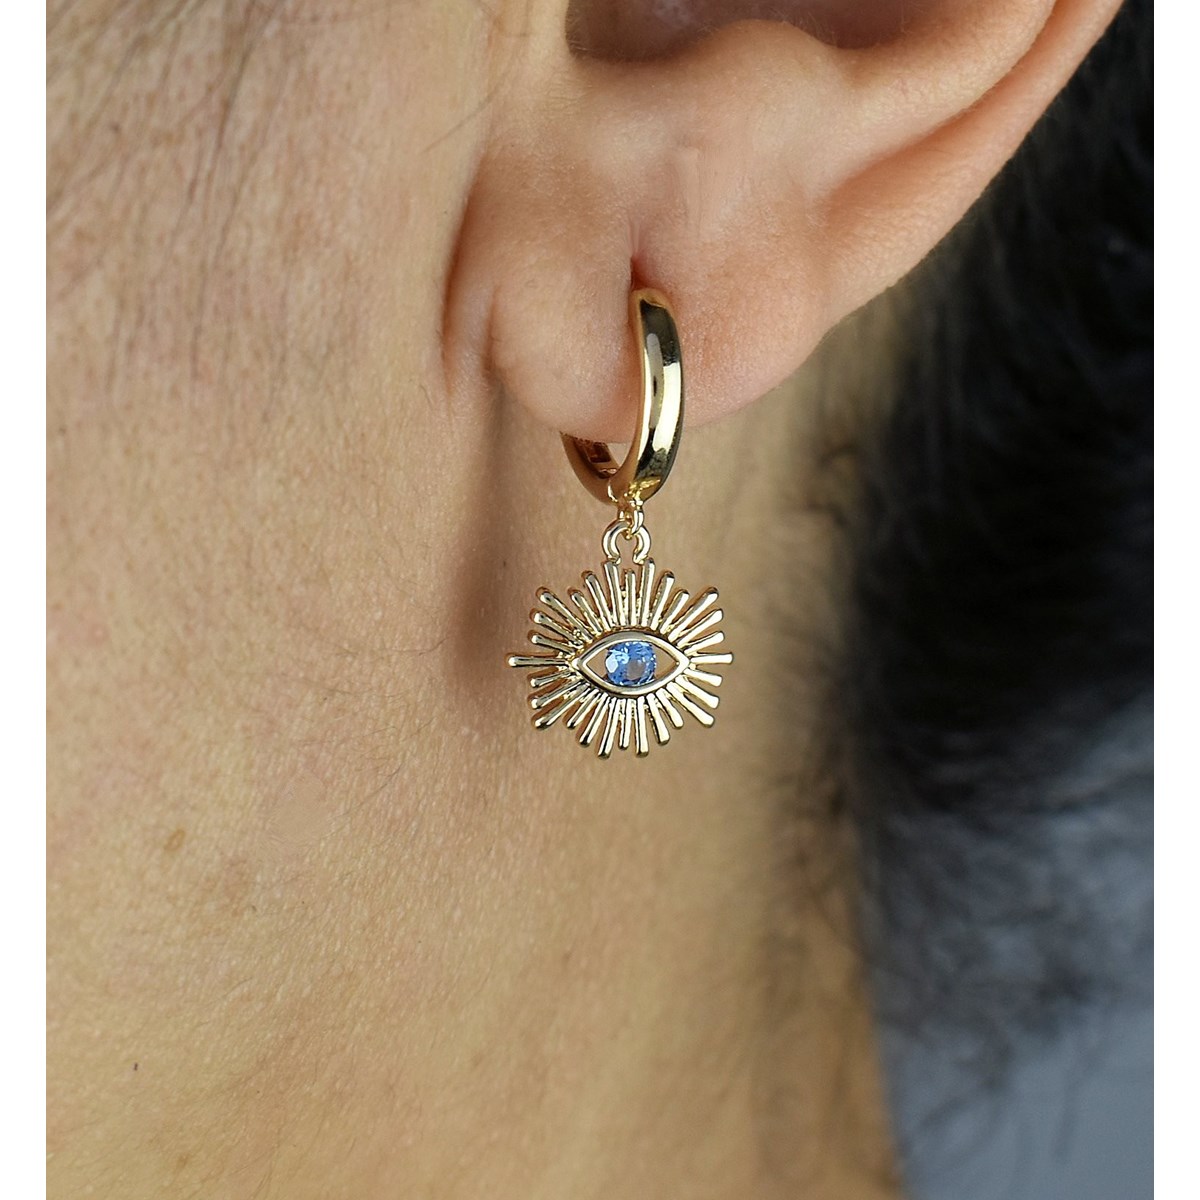 Boucles d'oreilles Mini Créoles oeil protecteur oxyde de zirconium bleu Plaqué or 750 3 microns - vue 3